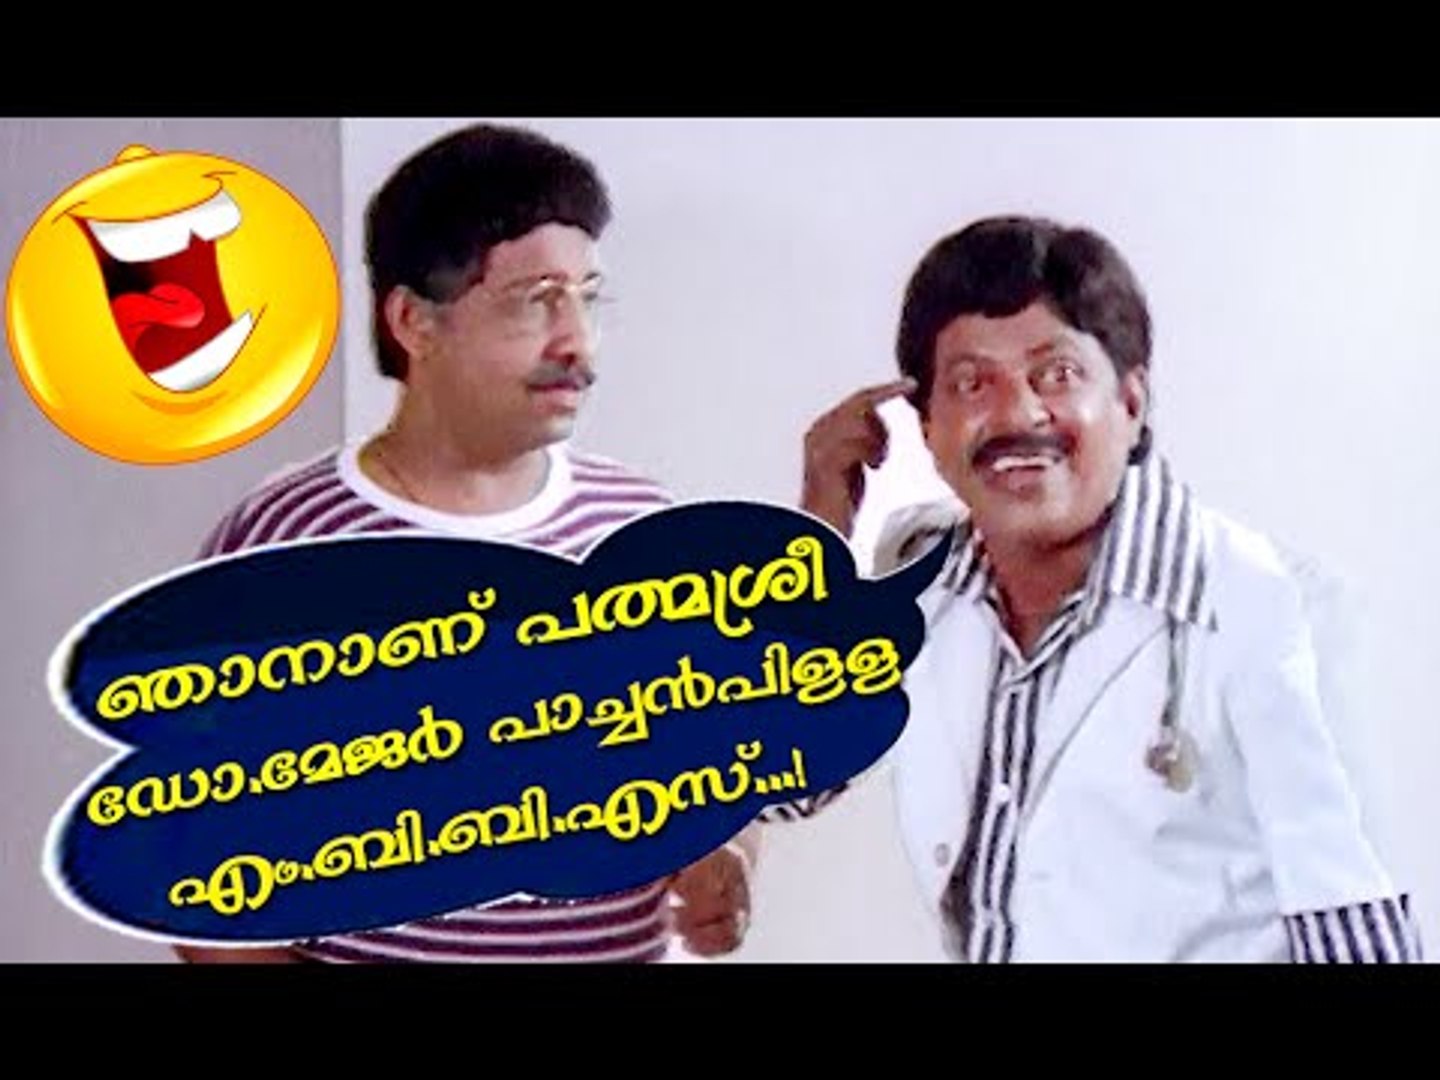 പത്മശ്രീ ഡോ.മേജർ പാച്ചൻപിള്ള... Malayalam Comedy Movies | Malayalam Comedy Scenes From Movies [HD]